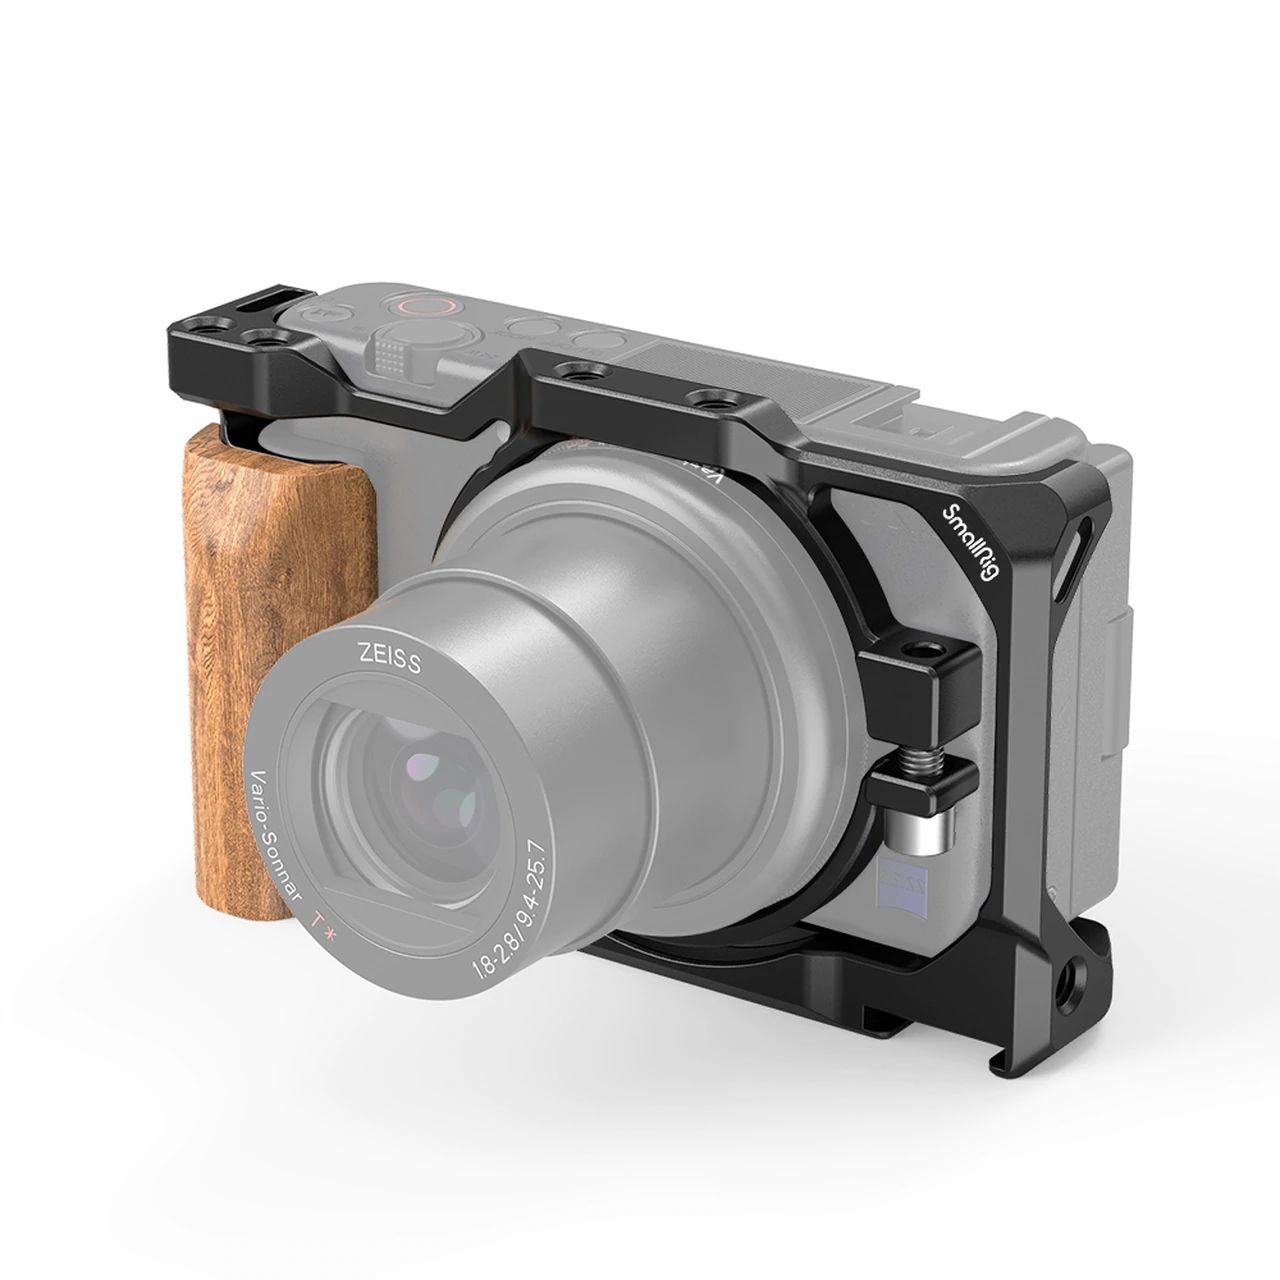 SmallRig Cage Sony ZV1 là một thiết bị không thể thiếu cho các nhà làm phim chuyên nghiệp. Với thiết kế vừa vặn và chắc chắn cho máy ảnh, bạn hoàn toàn yên tâm khi sử dụng để ghi lại những khoảnh khắc quan trọng nhất.Ảnh minh họa: https://i.imgur.com/sXaWFJx.jpg